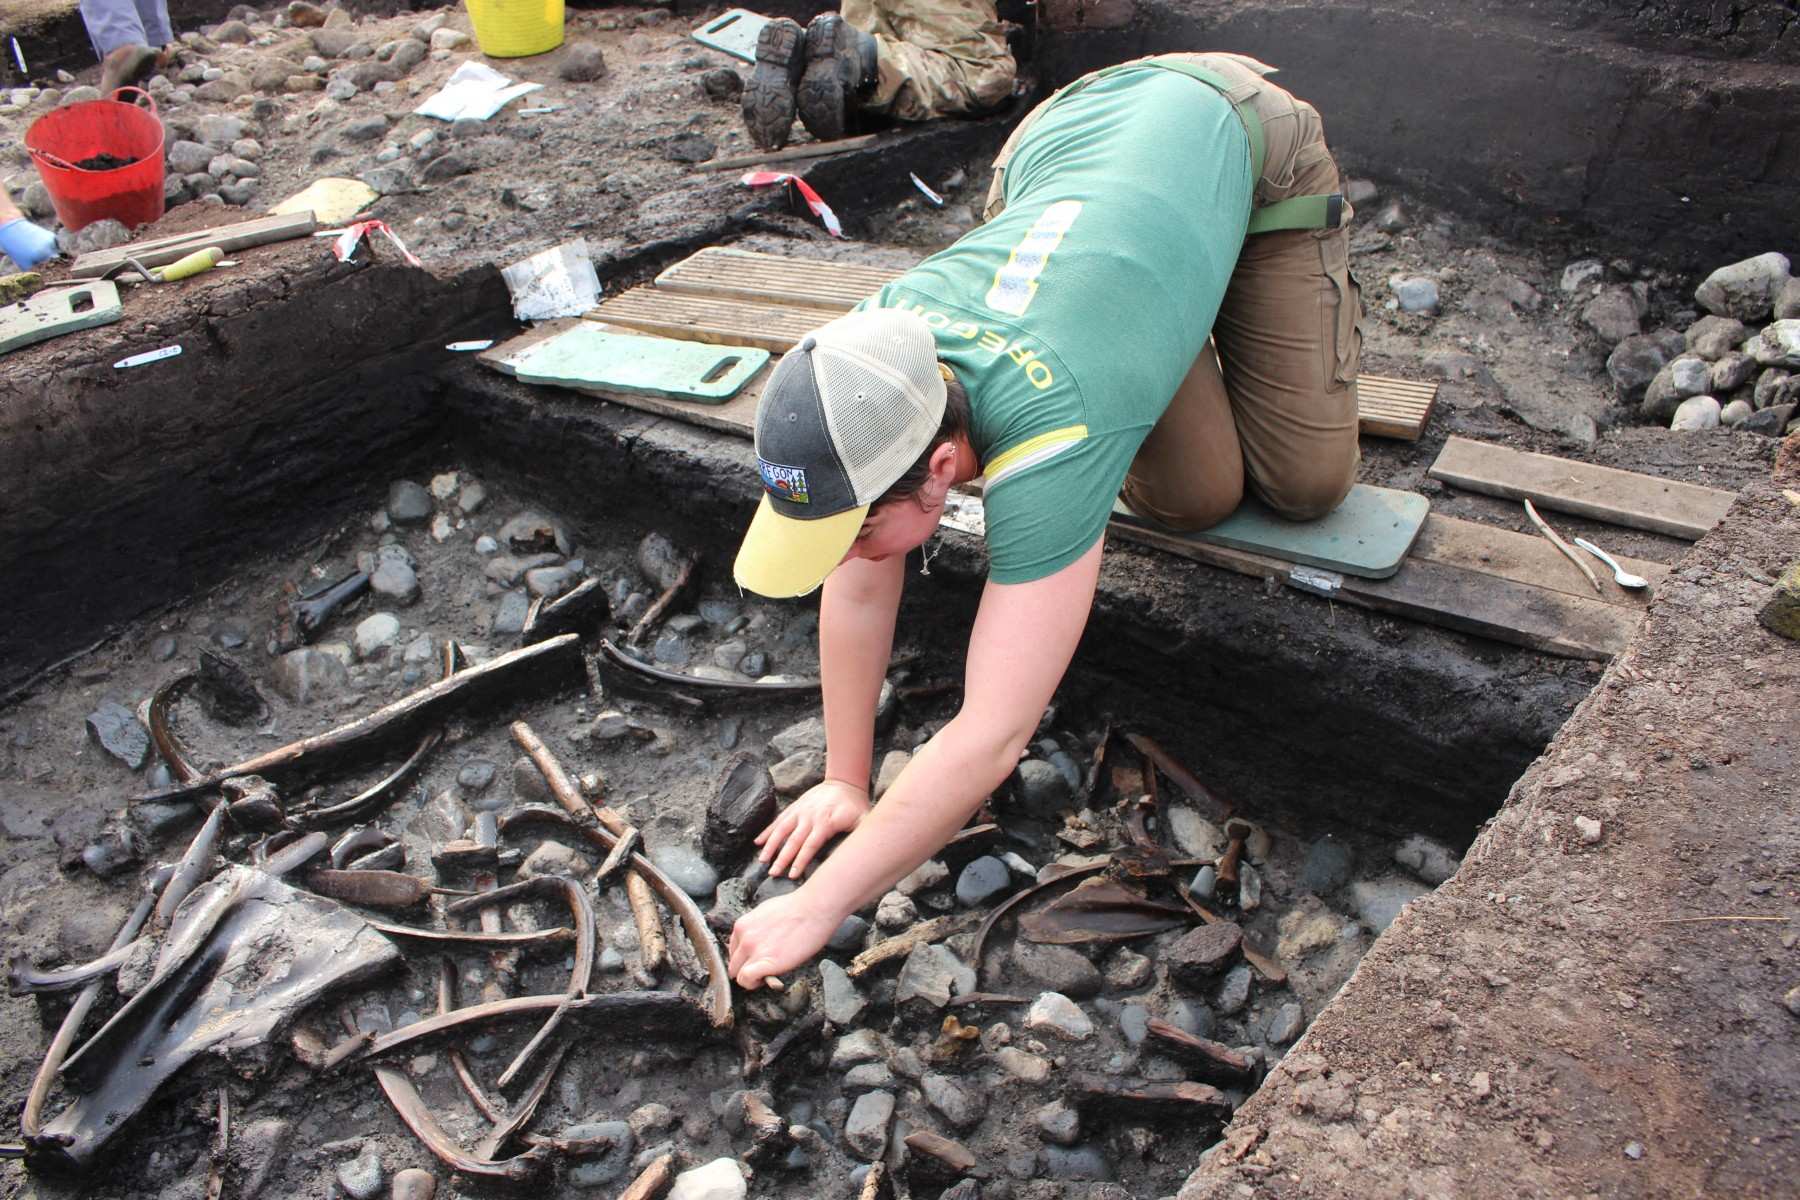 Botten, gereedschappen en wapens van dieren, samen met zeldzaam bewijs van houtbewerking, werden opgegraven tijdens opgravingen op de locatie nabij Scarborough